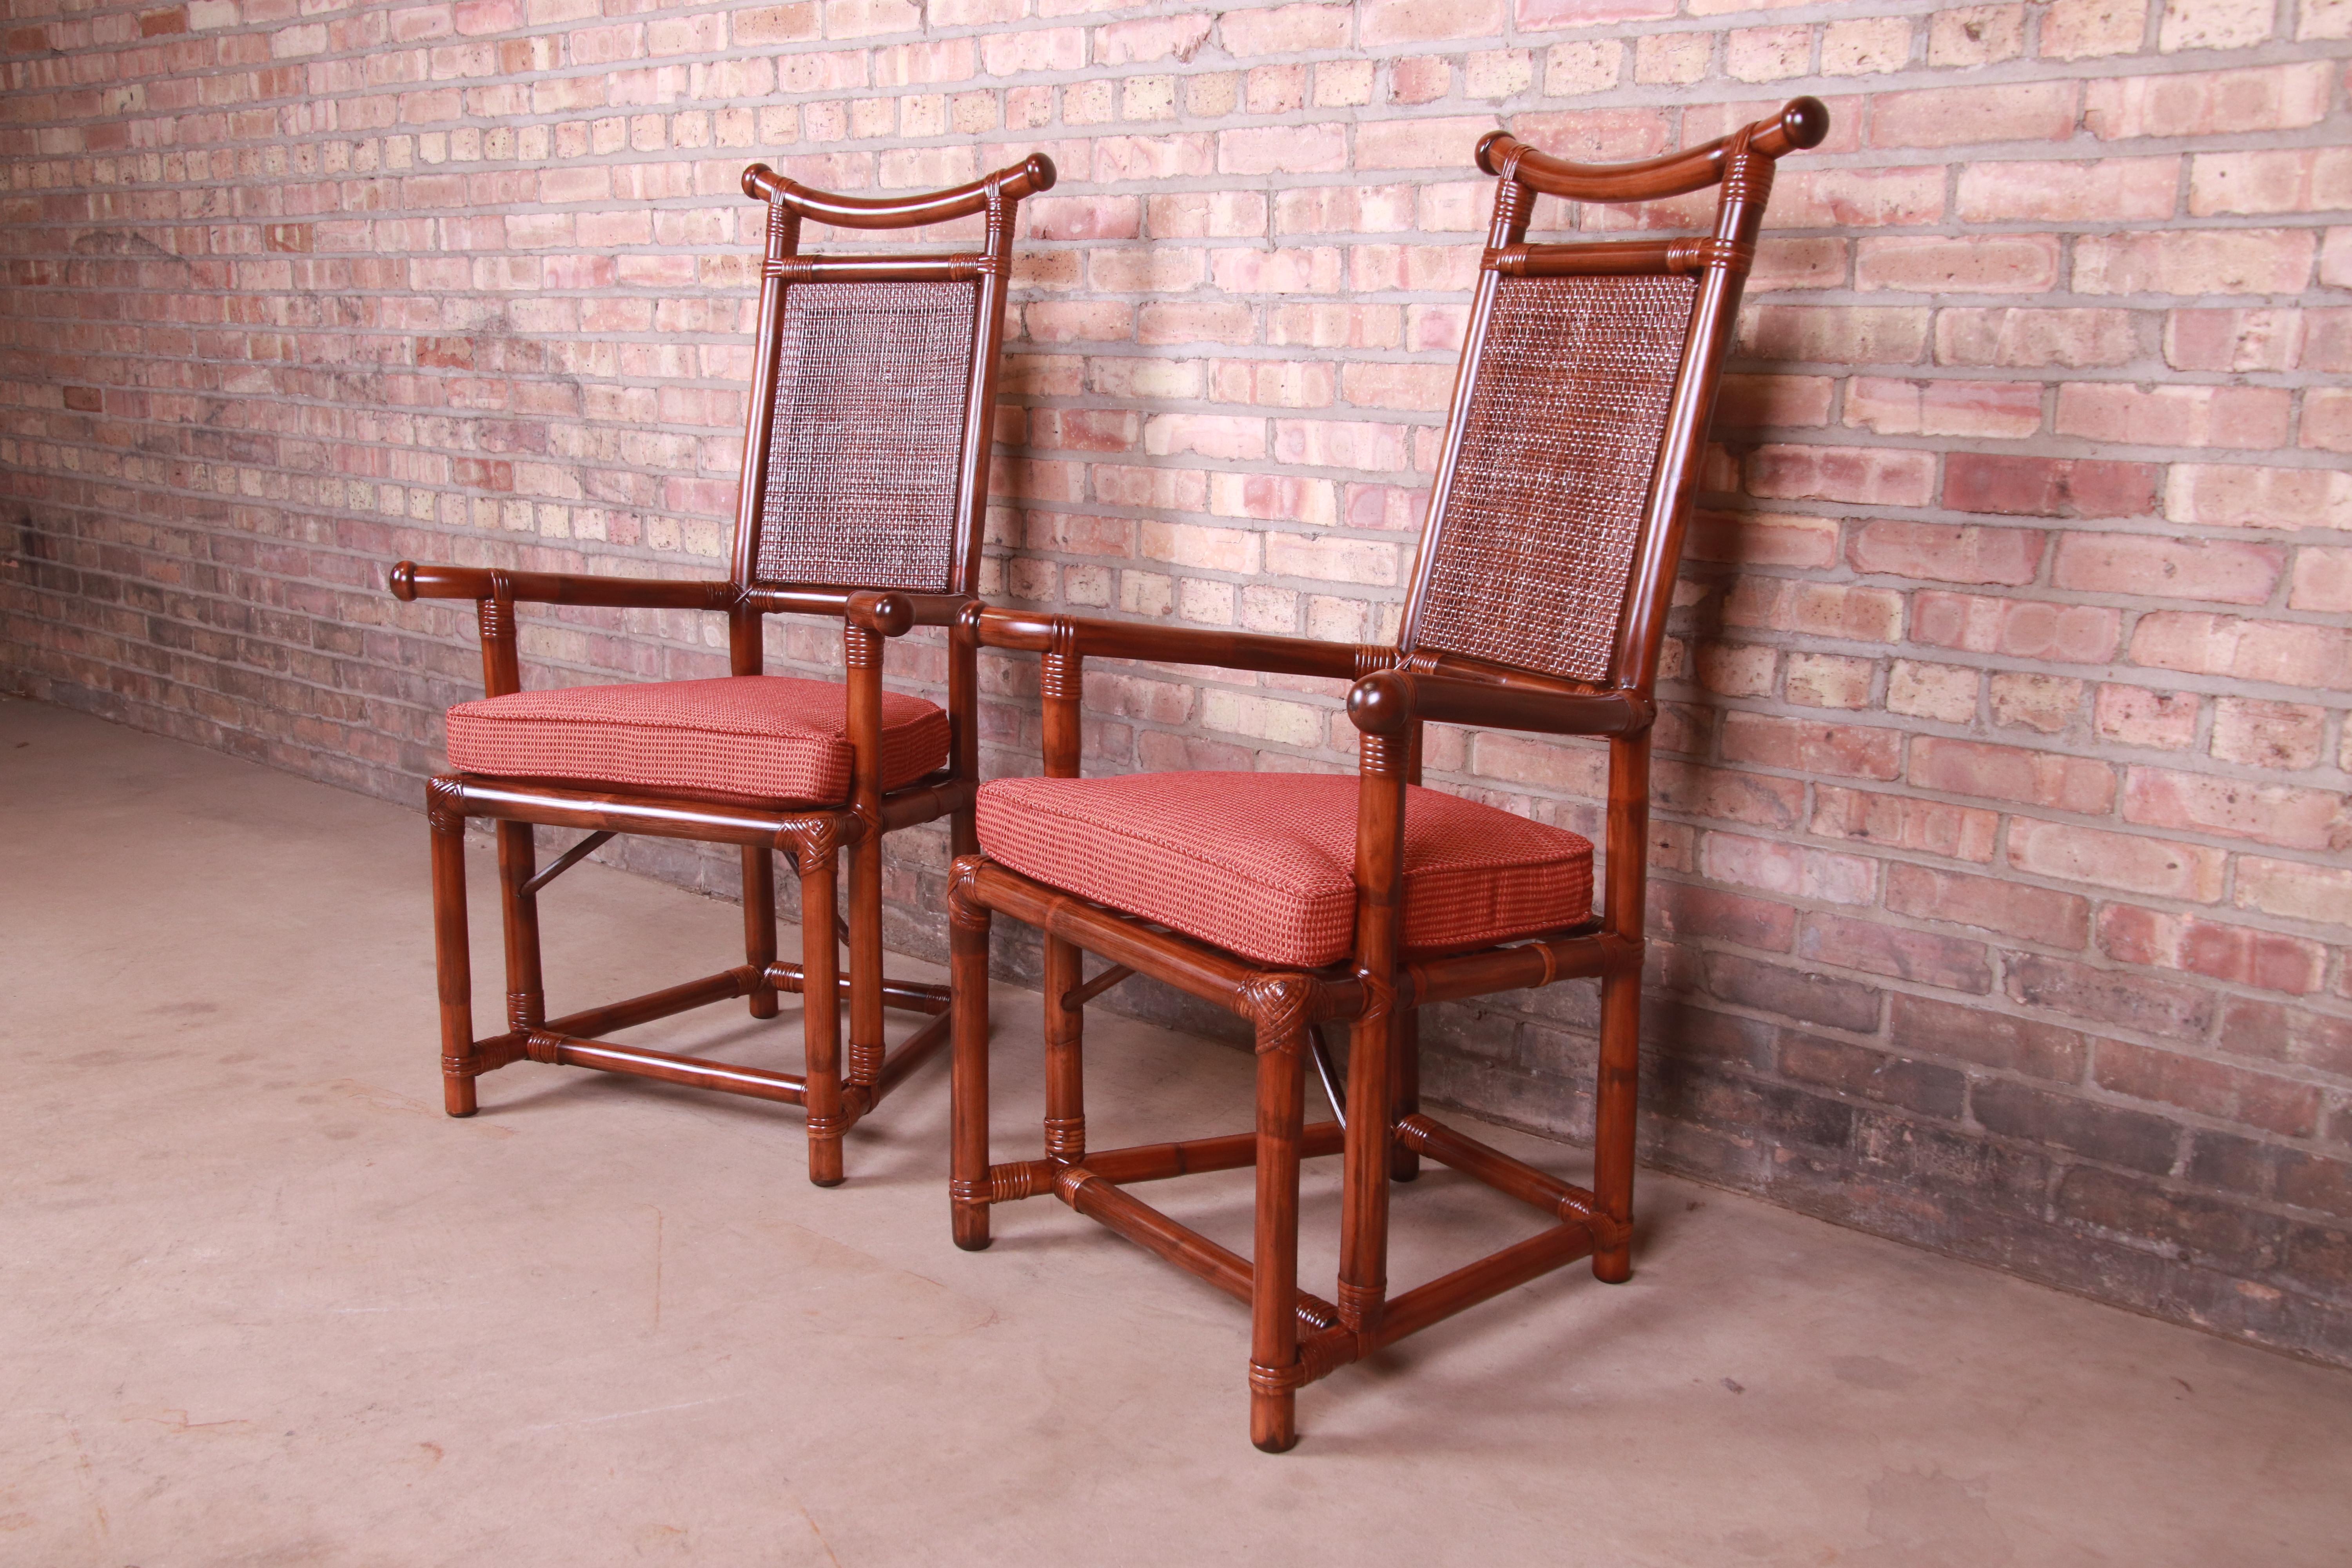 Ein außergewöhnliches Paar Hollywood Regency Chinoiserie Stühle aus der Mitte des Jahrhunderts mit hoher Rückenlehne oder Lounge Stühle

Von Henry Olko für Willow and Reed, 